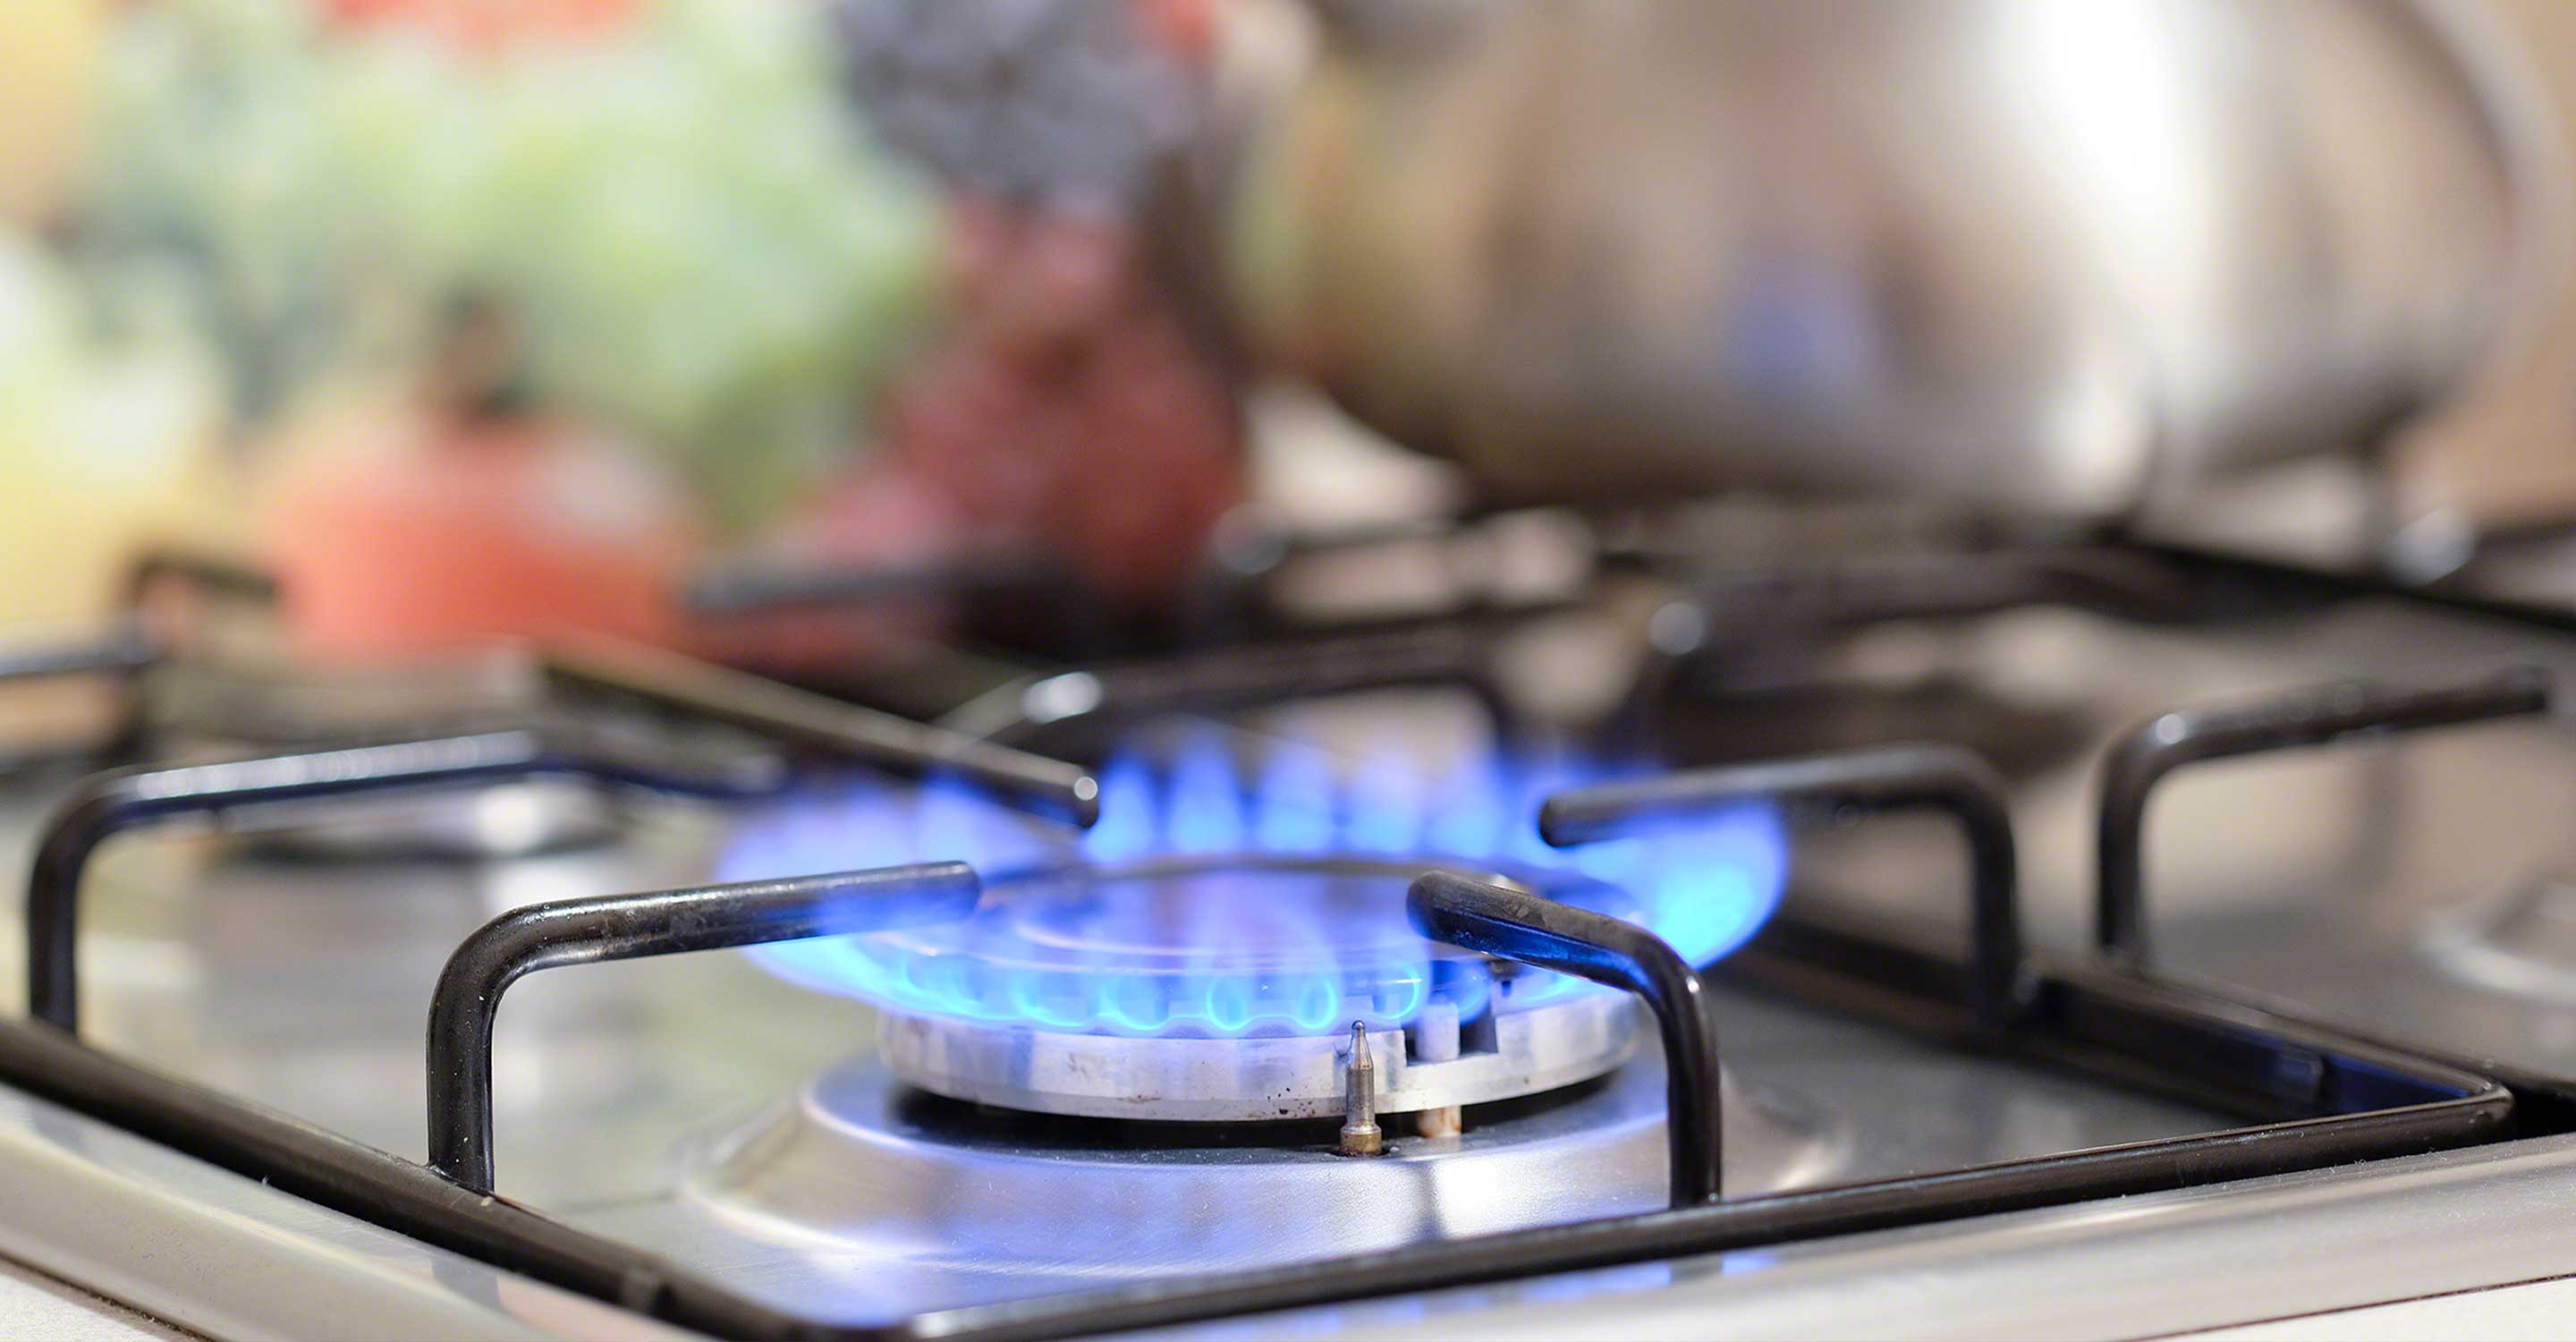 Peligros ocultos en el hogar: ¿Es segura su cocina de gas?